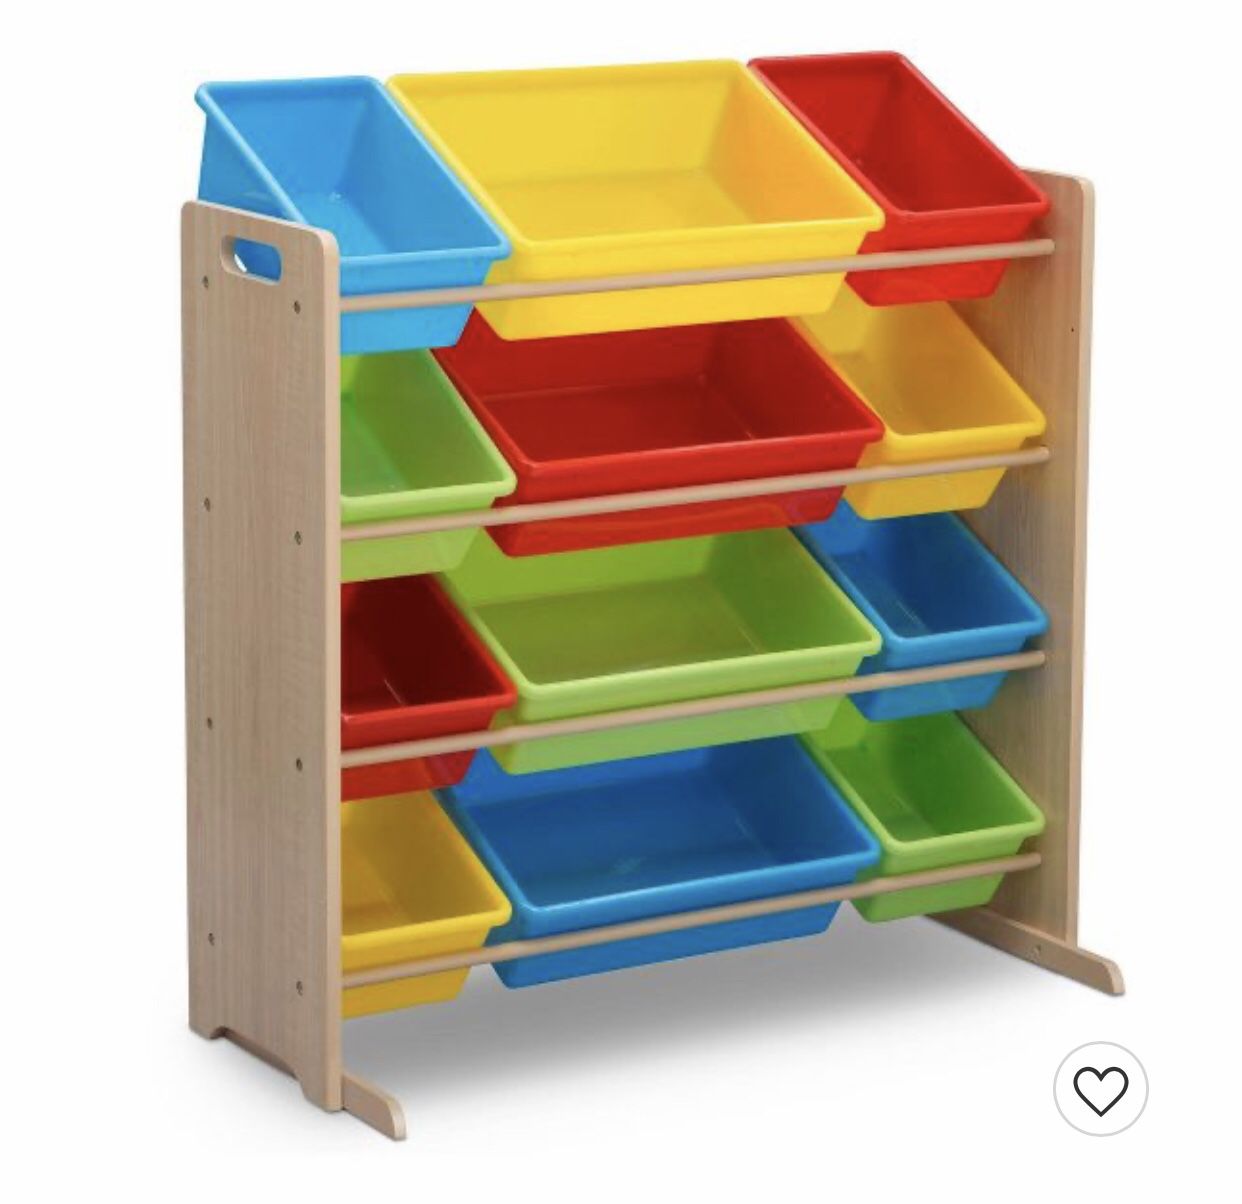 Kids Toy Storage Shelf with Bins